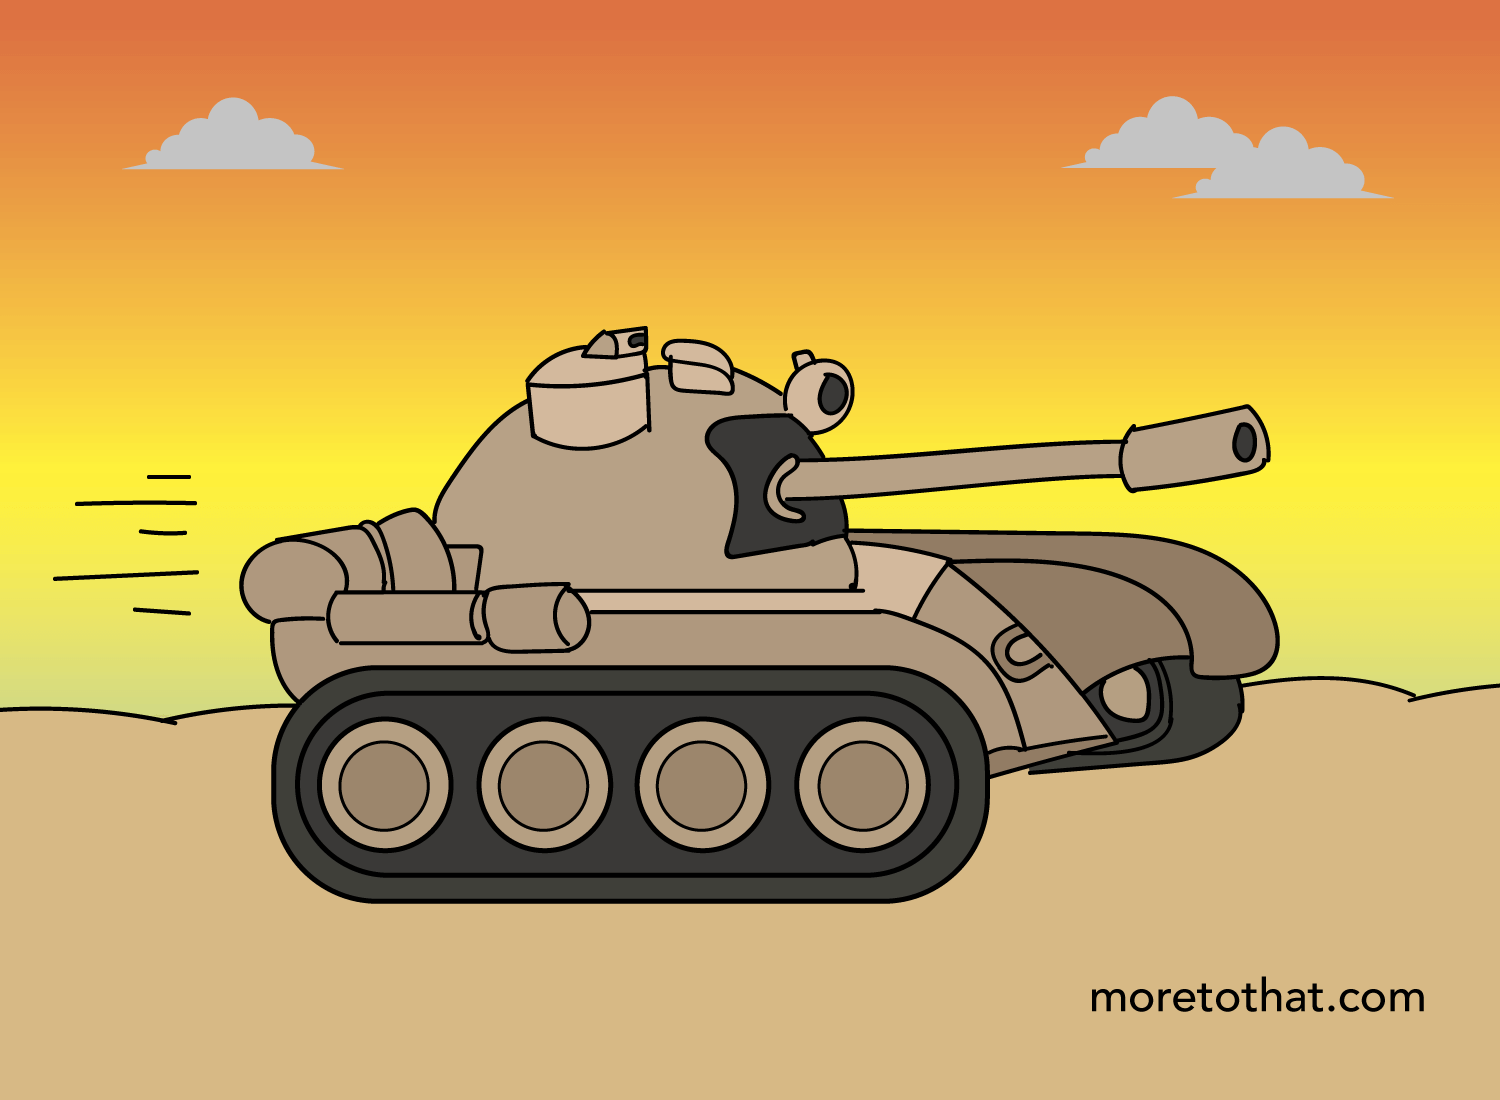 tank - war cartoon